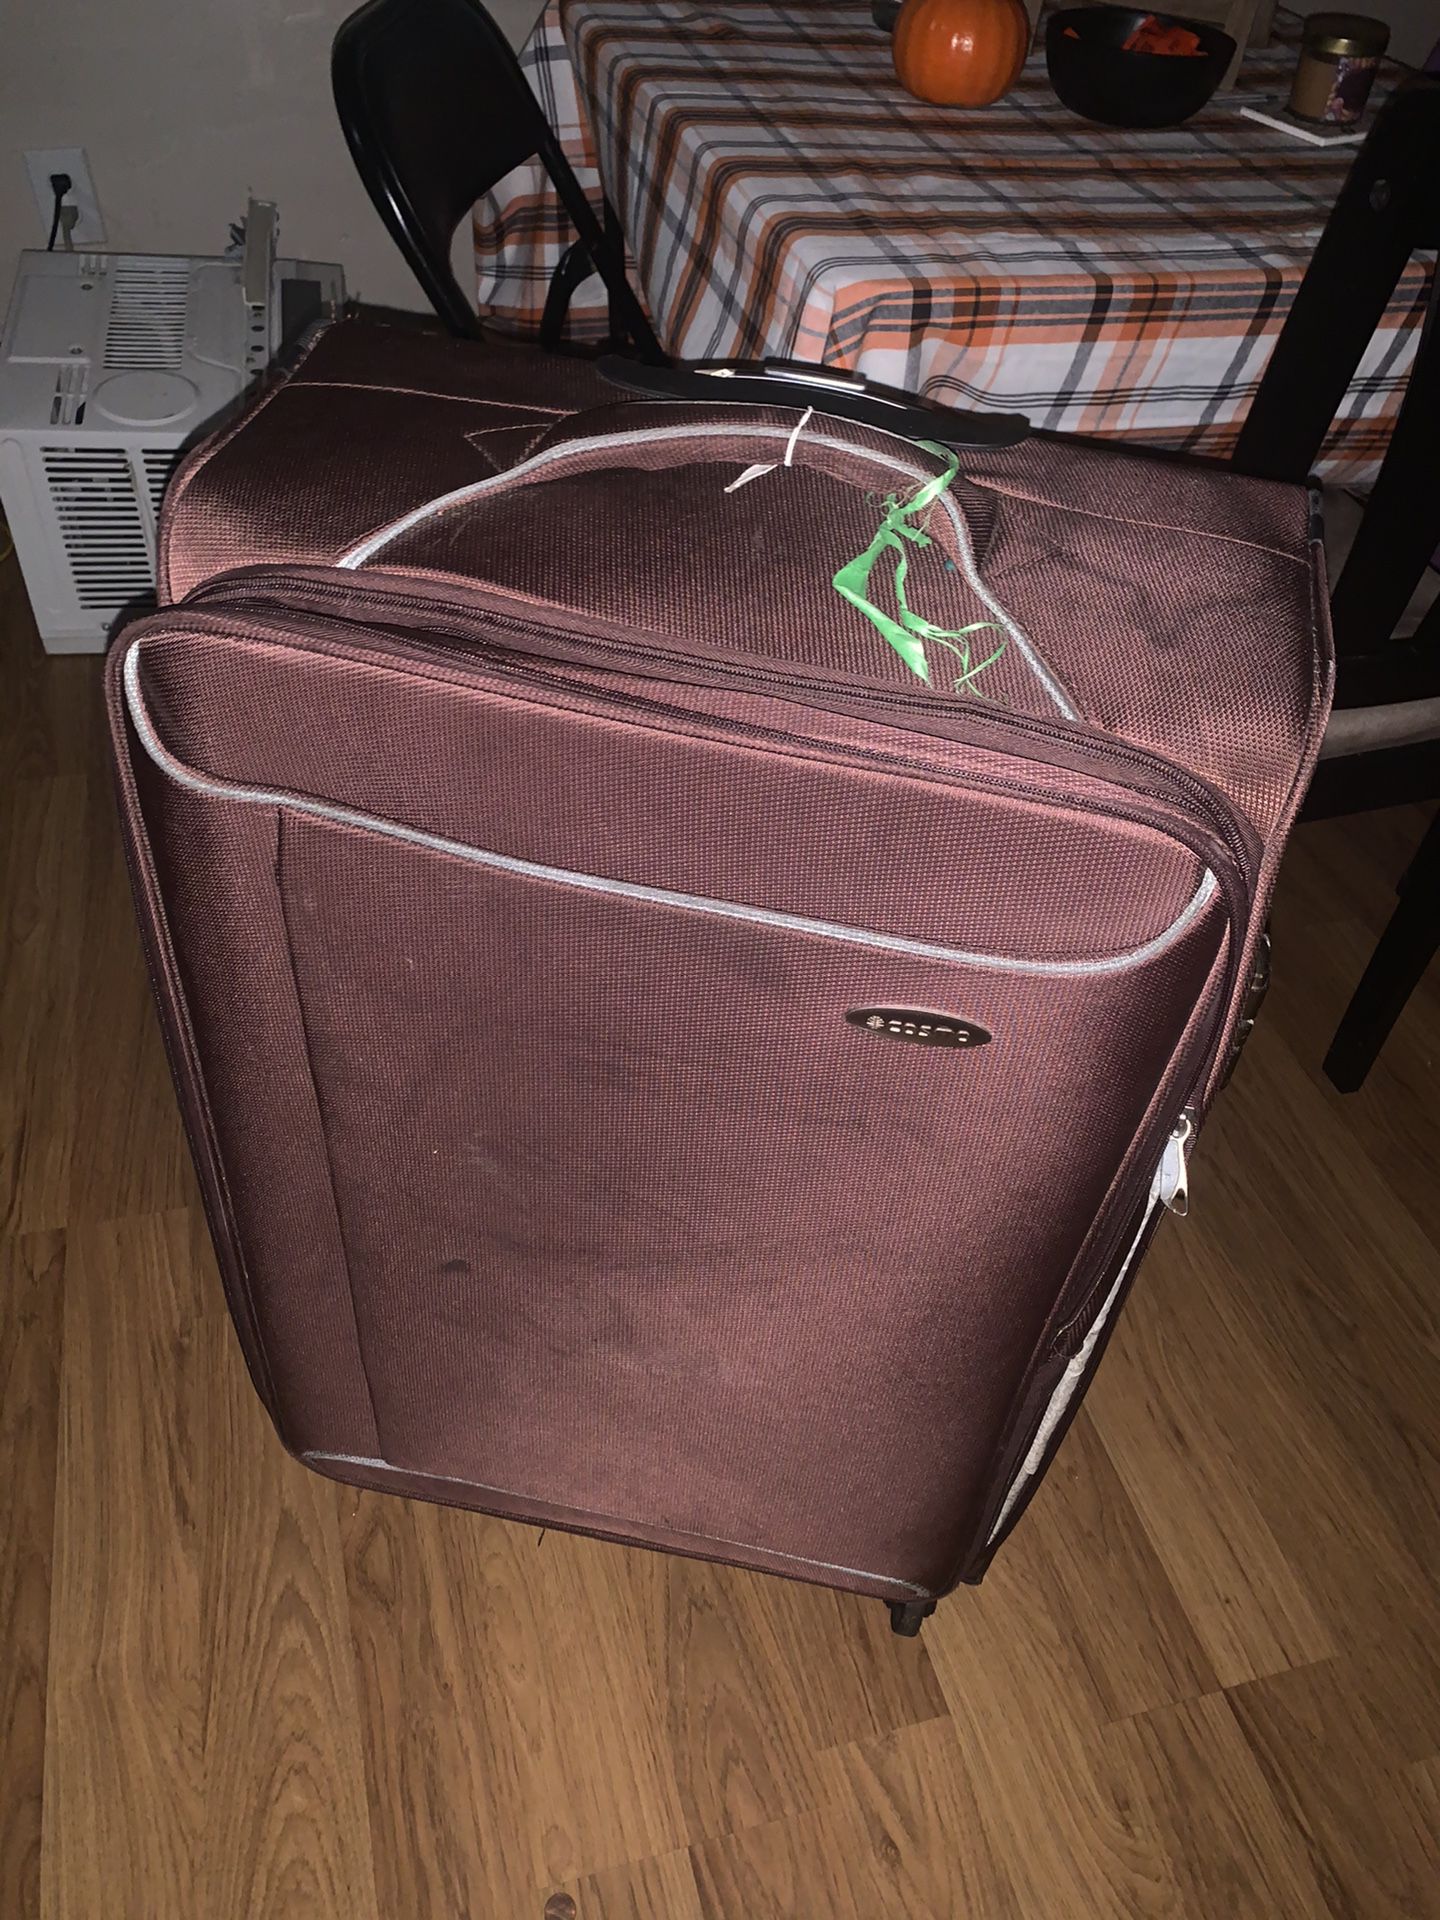 Large Suitcase 